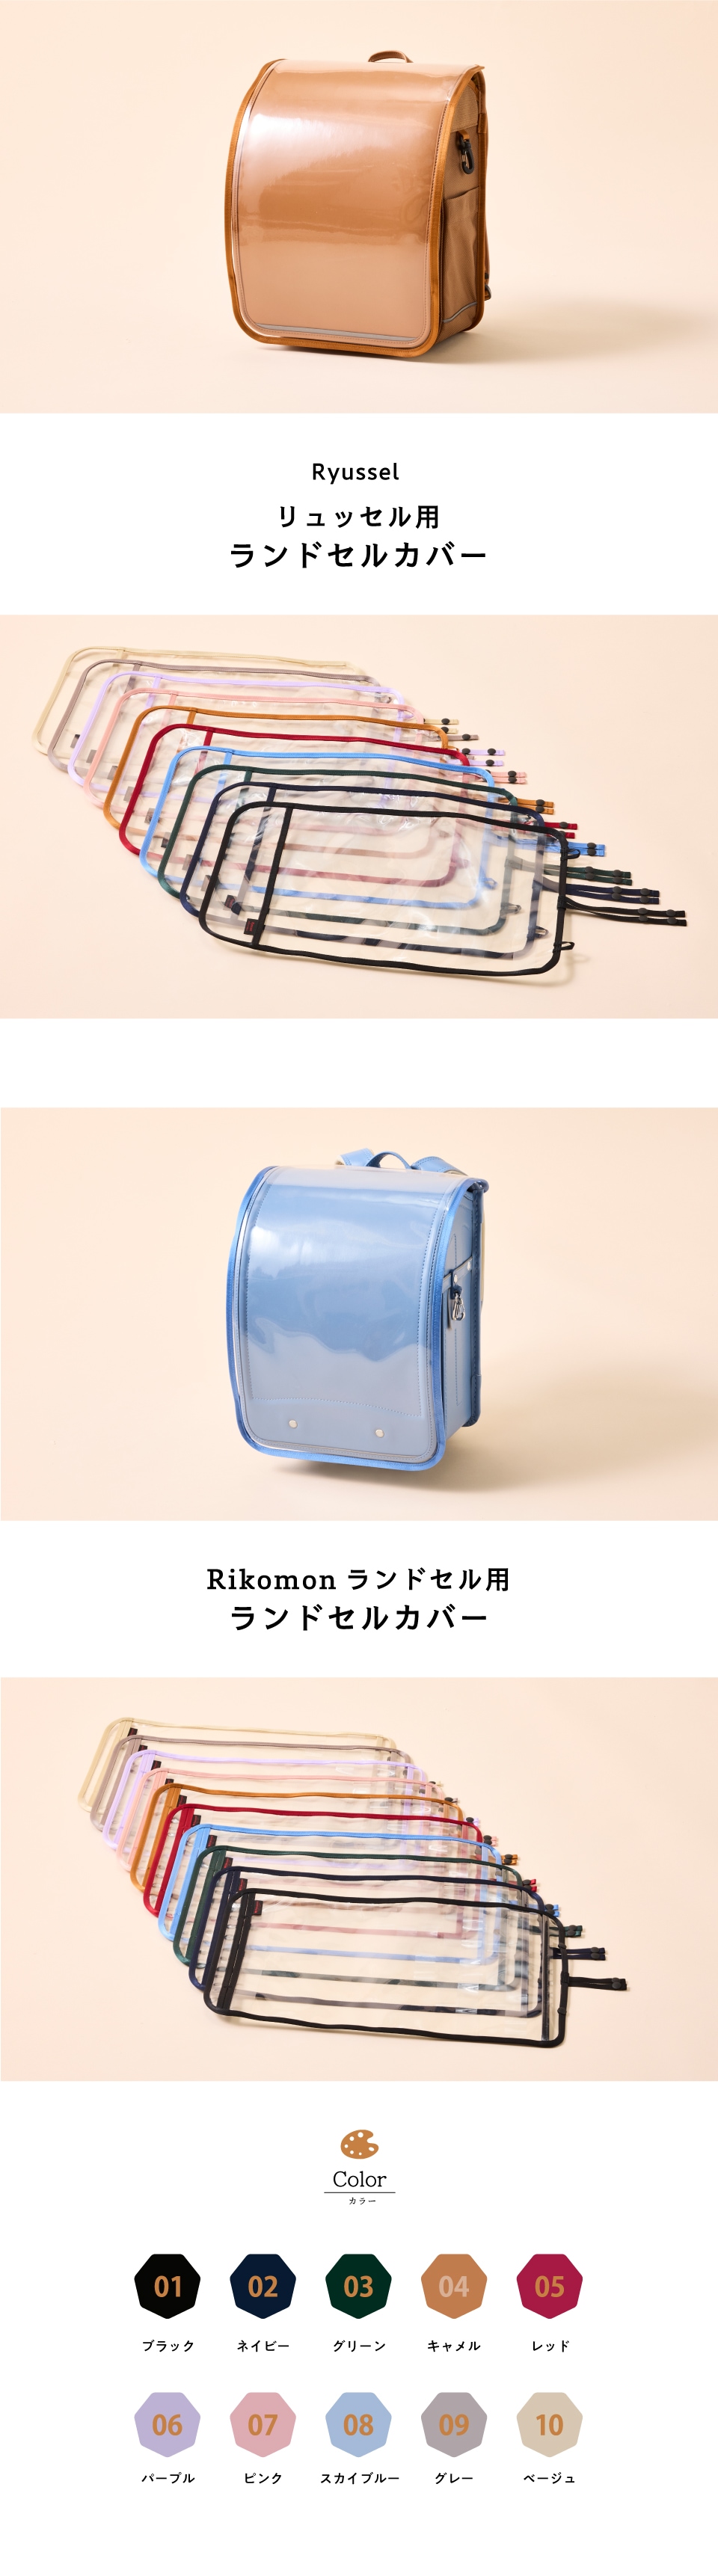 ランドセルカバー | Rikomonランドセル | 日本最大のかばんブランド豊岡鞄